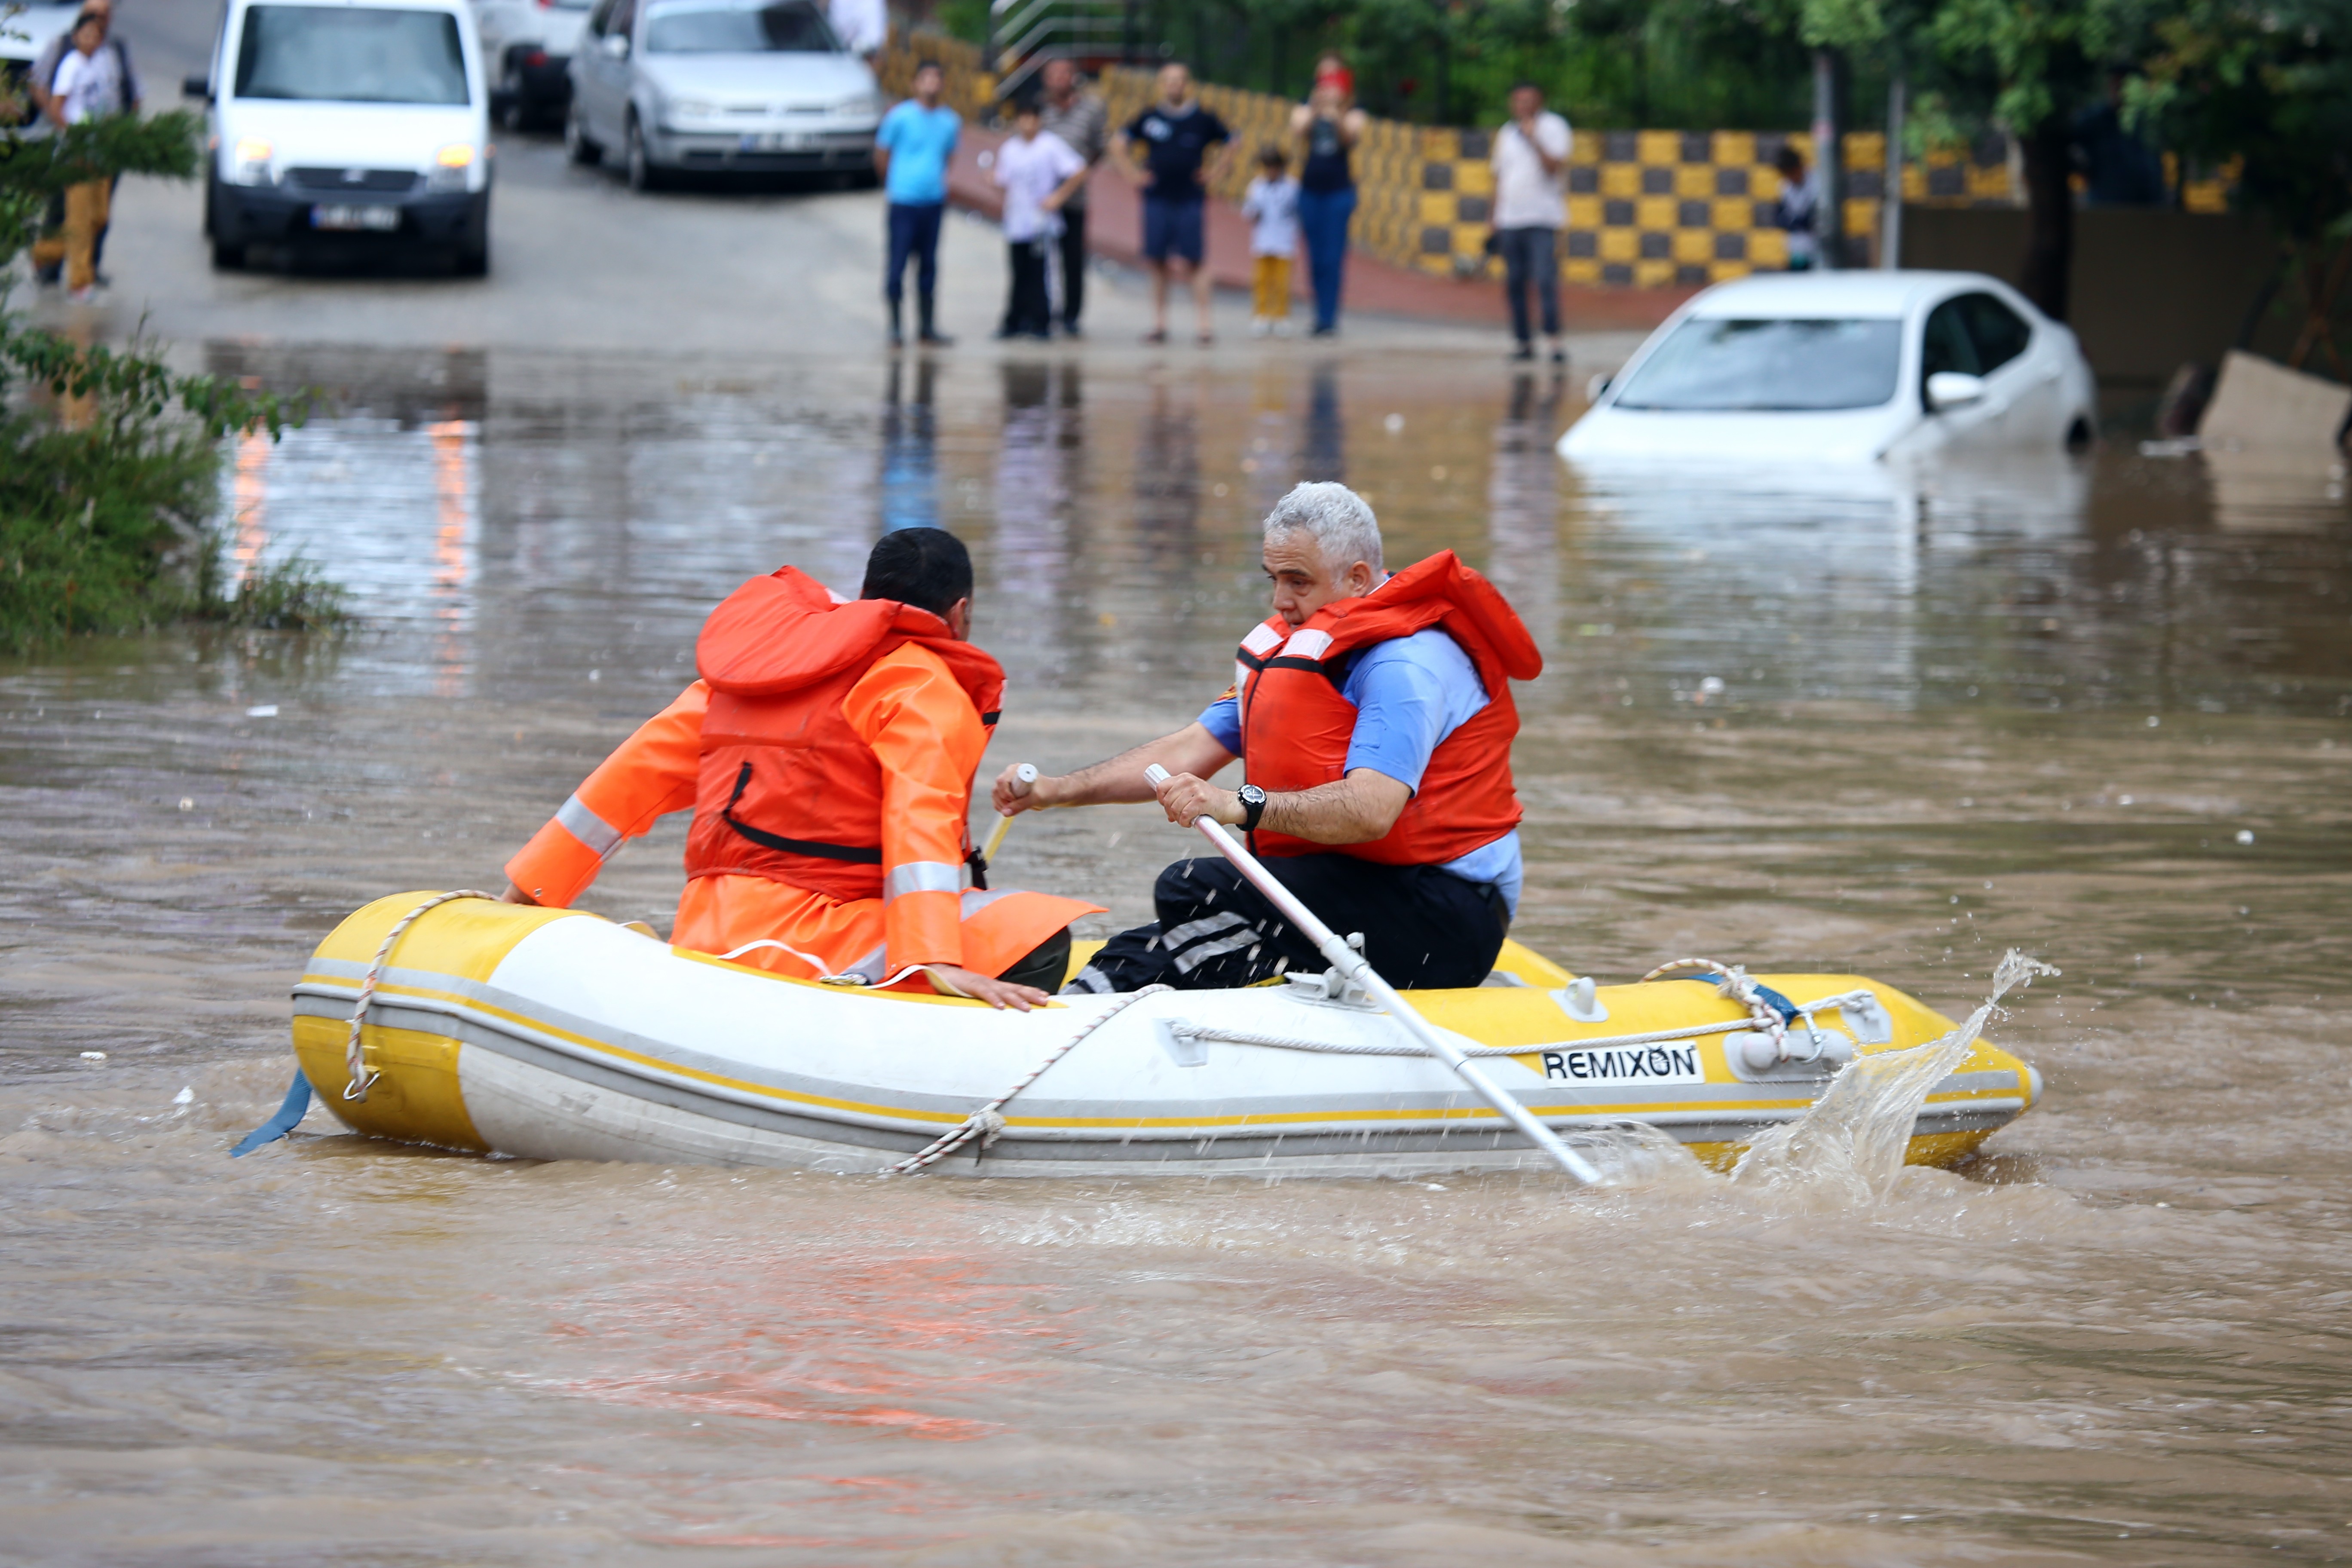 Municipiile Tulcea si Craiova, precum si alte orase din Romania au fost afectate de inundatii. Hidrologii au emis atentionari pentru mai multe rauri.